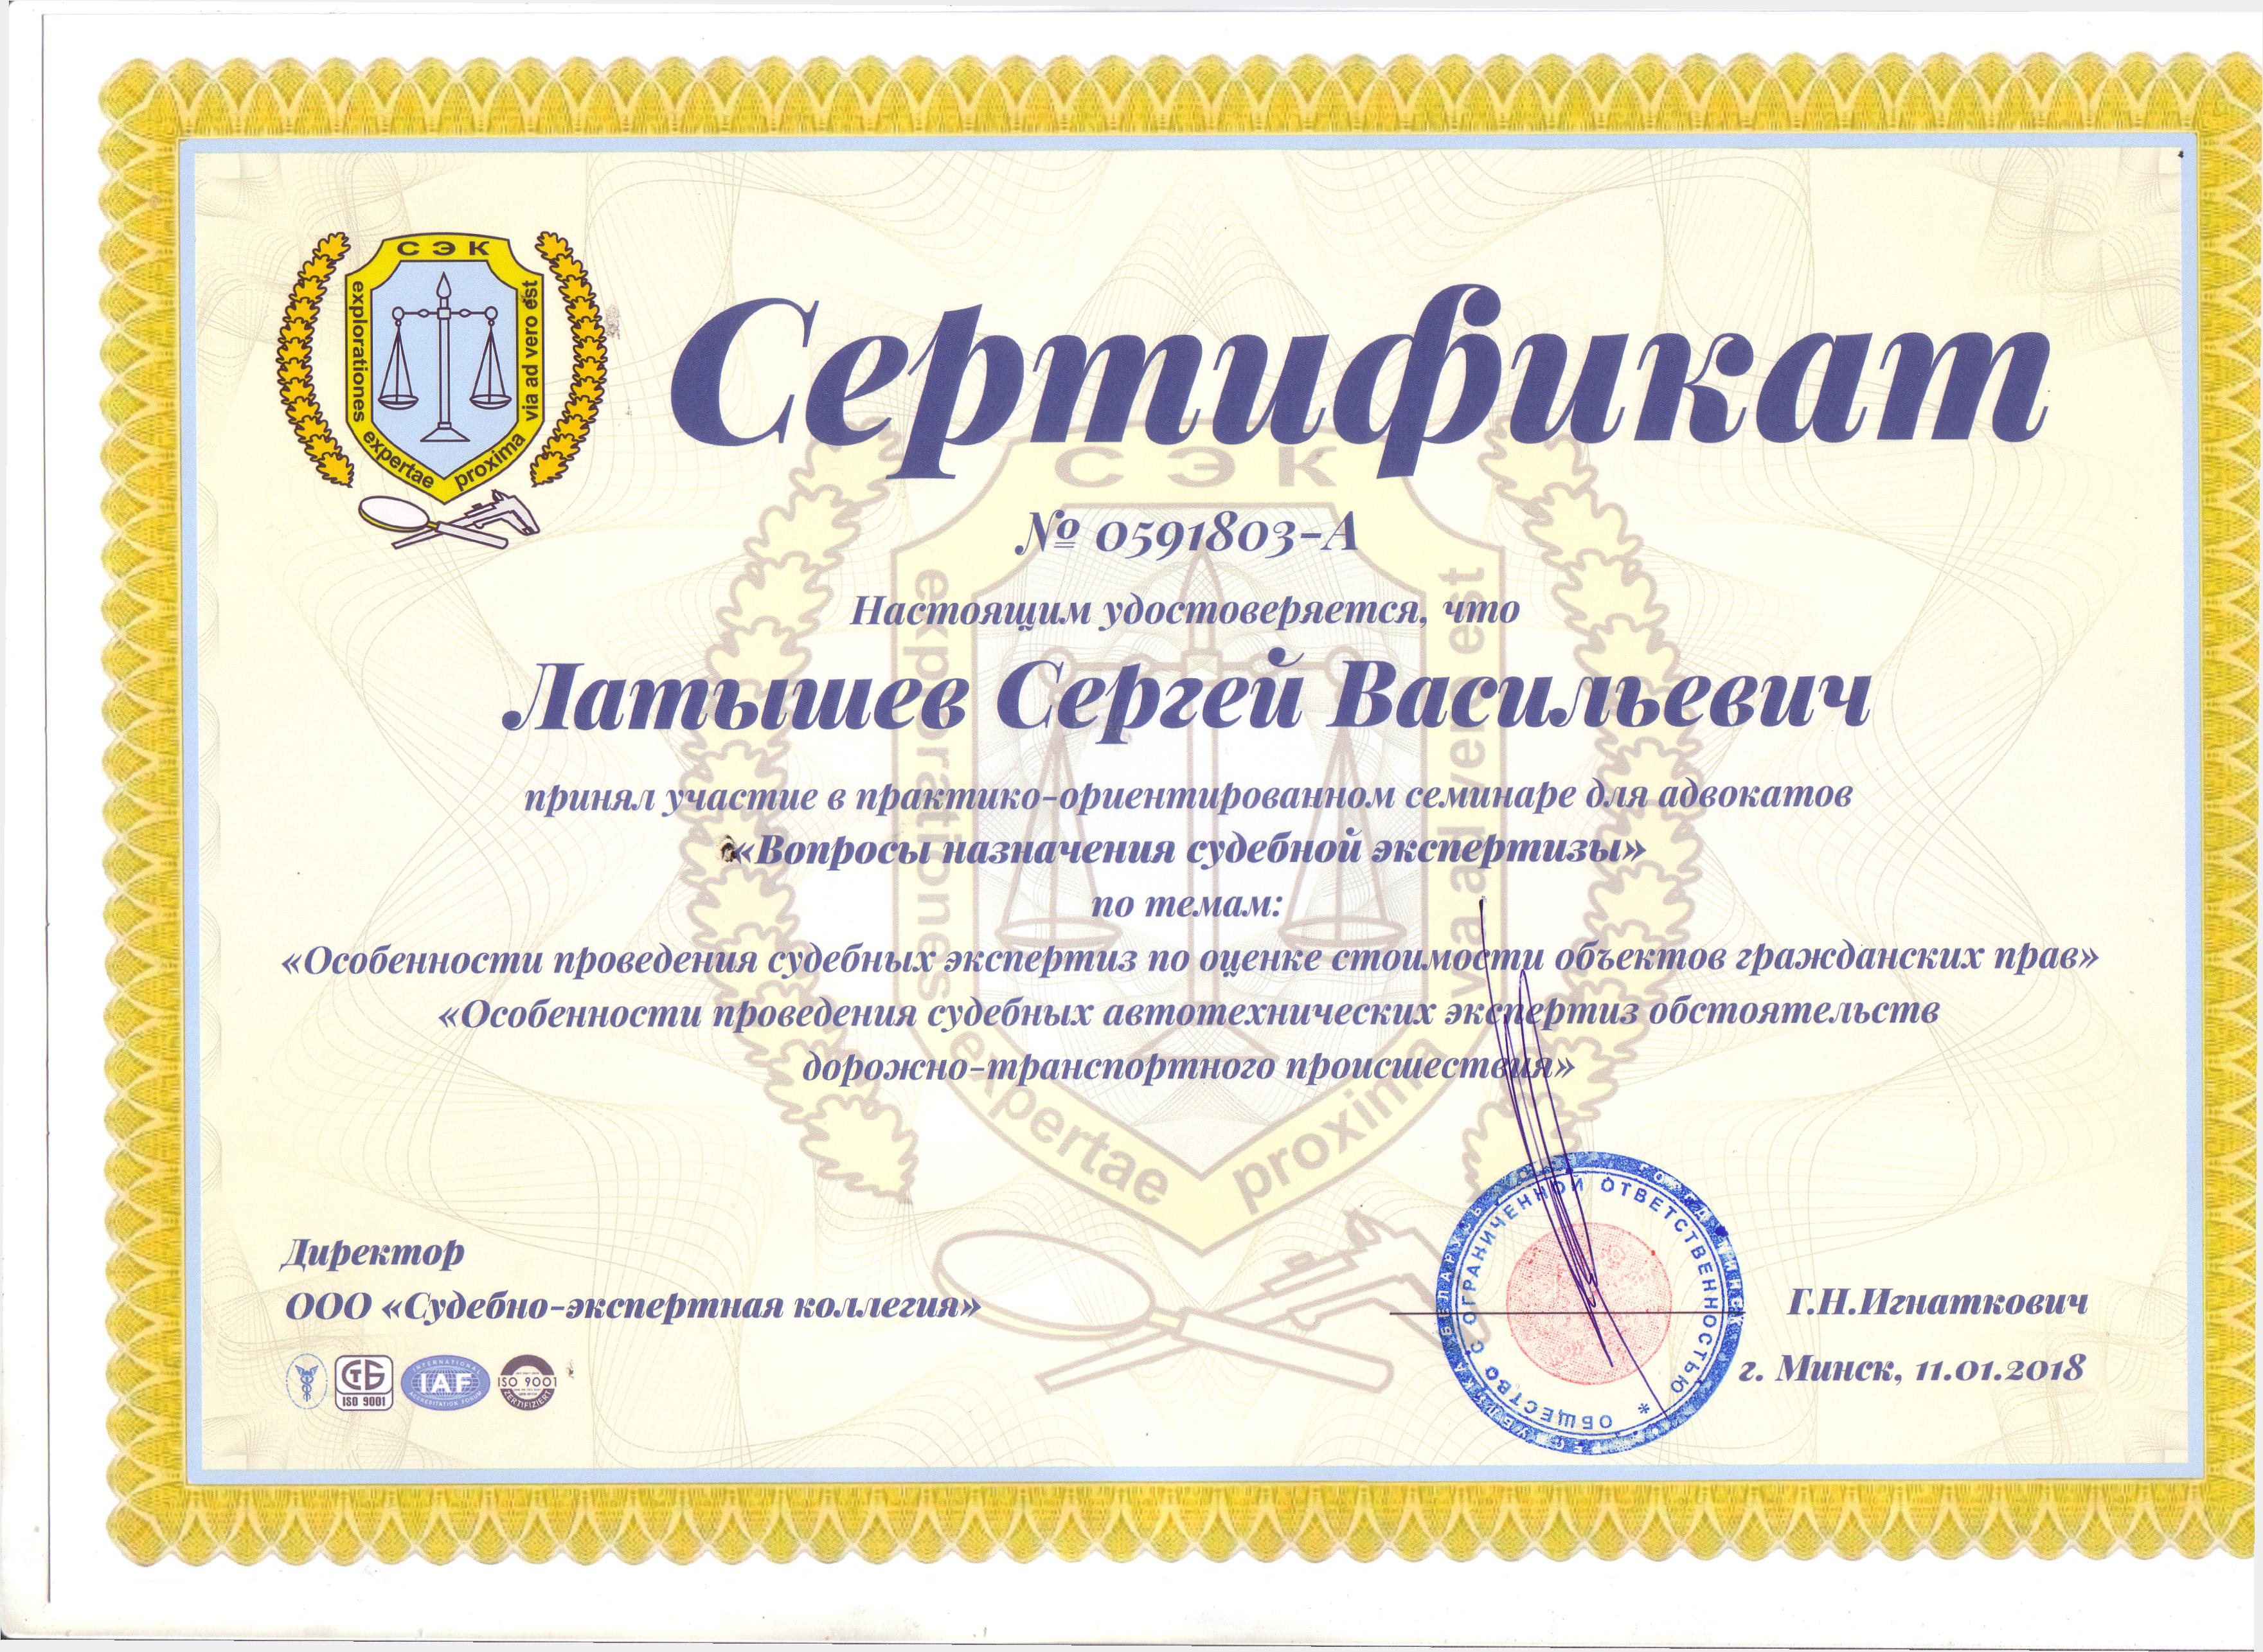 Сертификат адвоката Латышева С.В. об участии в семинаре